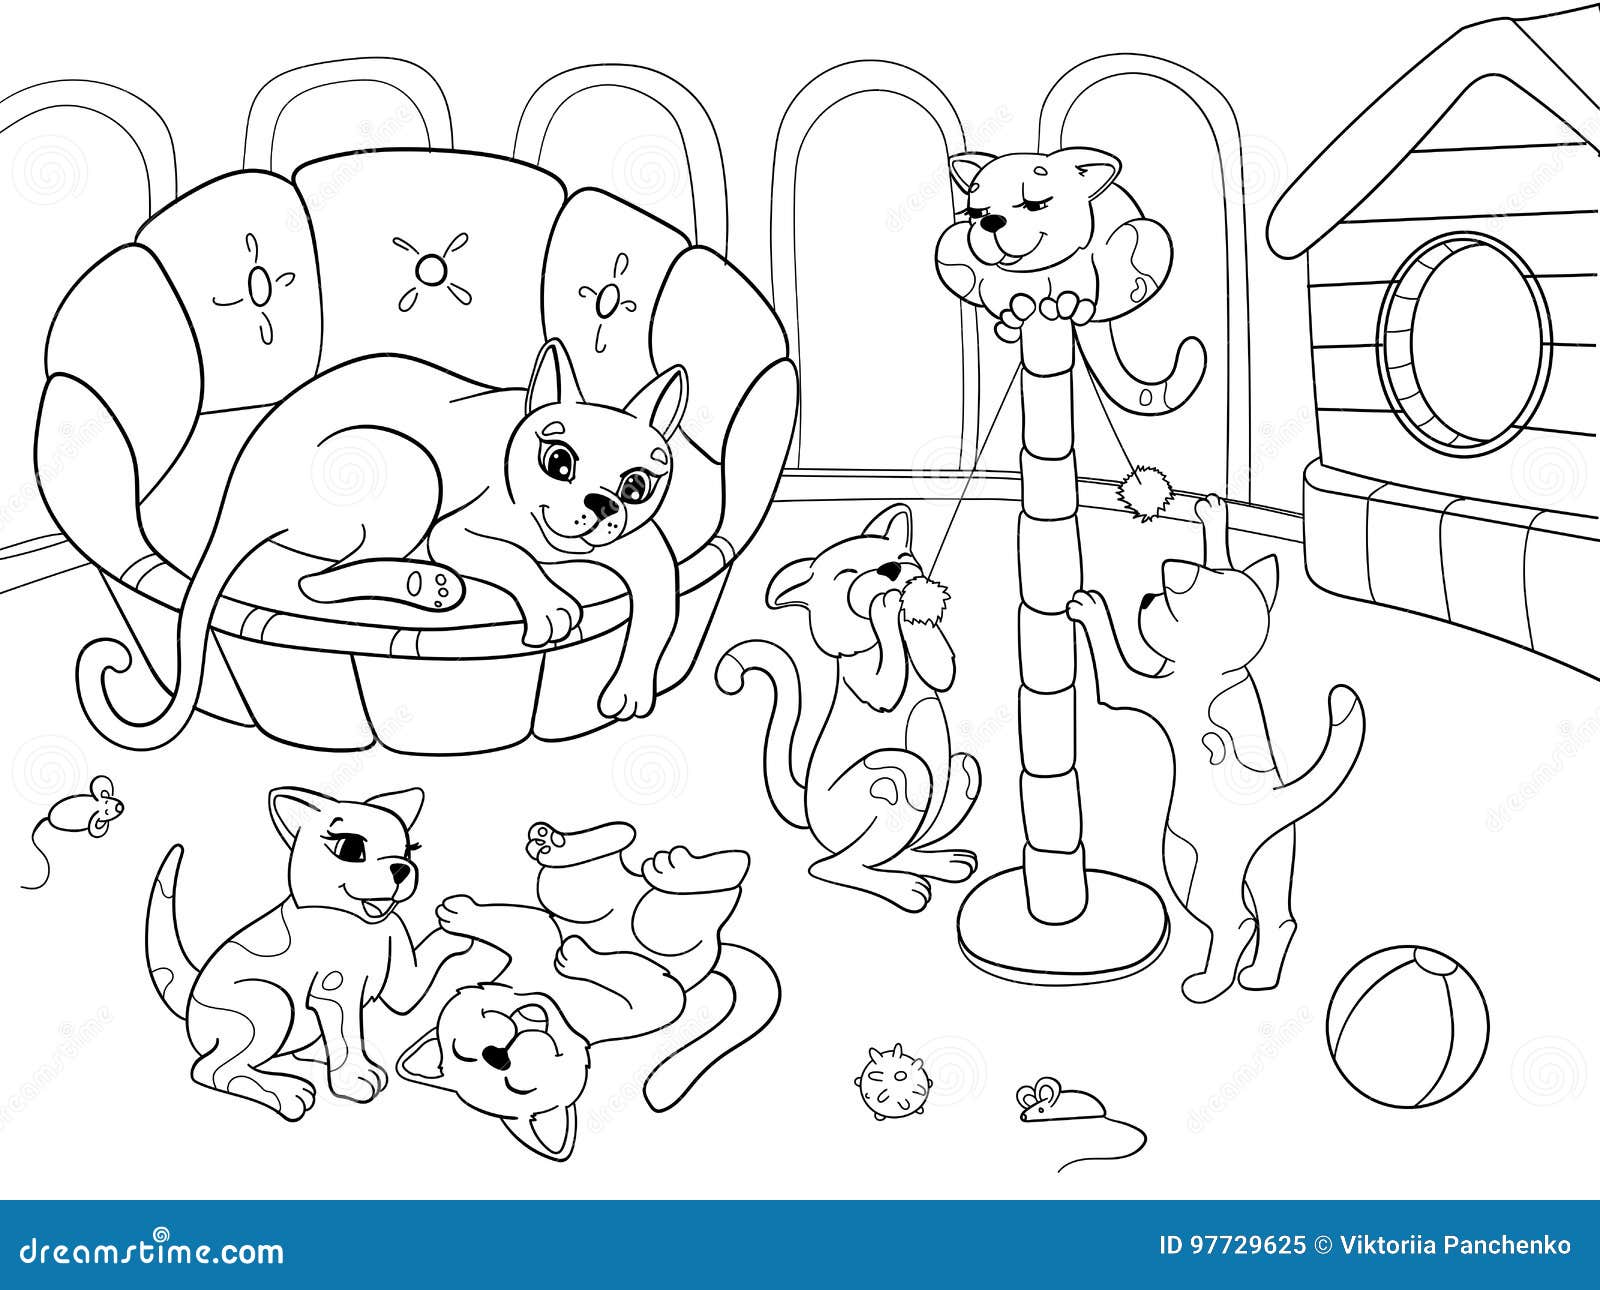  Meu livro de colorir sobre Gatos: Desenhos para colorir de  animais, paisagens e personagens, crianças de 2 a 6 anos (Portuguese  Edition): 9798421751328: CRB, Edição: Libros